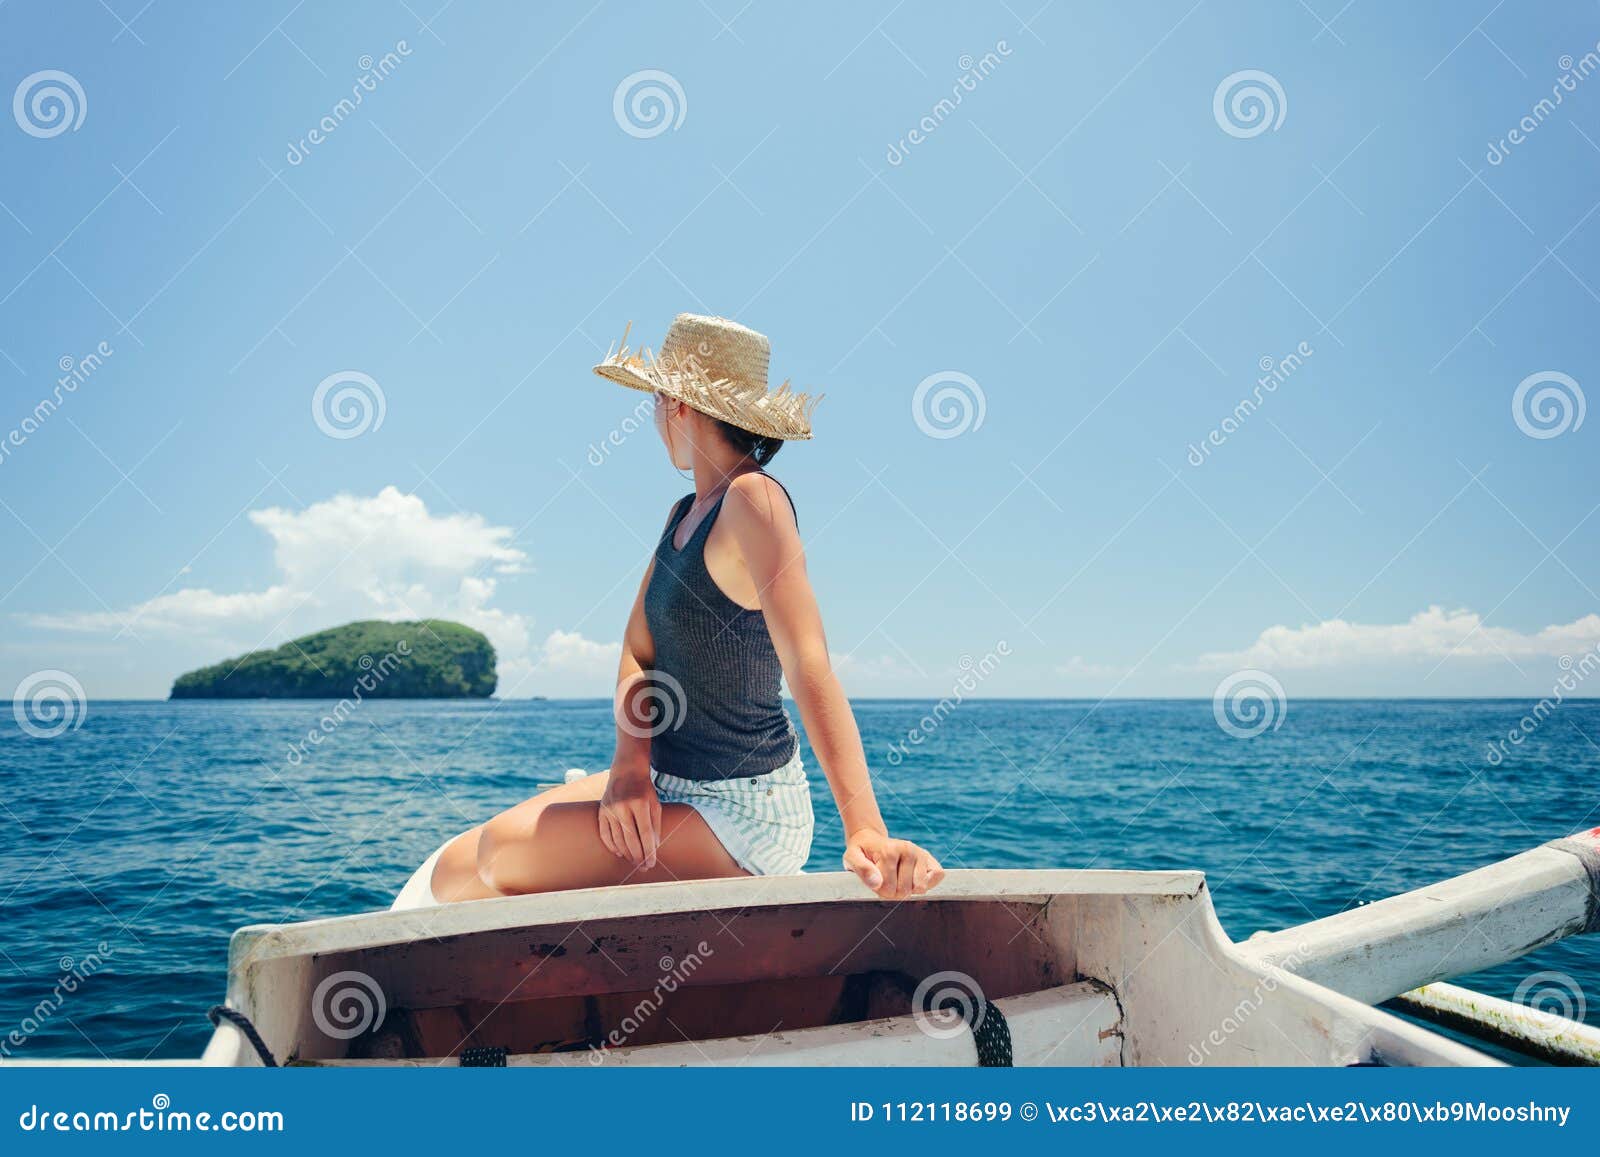 aantrekkelijk Correctie shampoo Vrouw Die Op De Boot Dichtbij Het Eiland in Oceaan Drijven Stock Afbeelding  - Image of rust, vers: 112118699